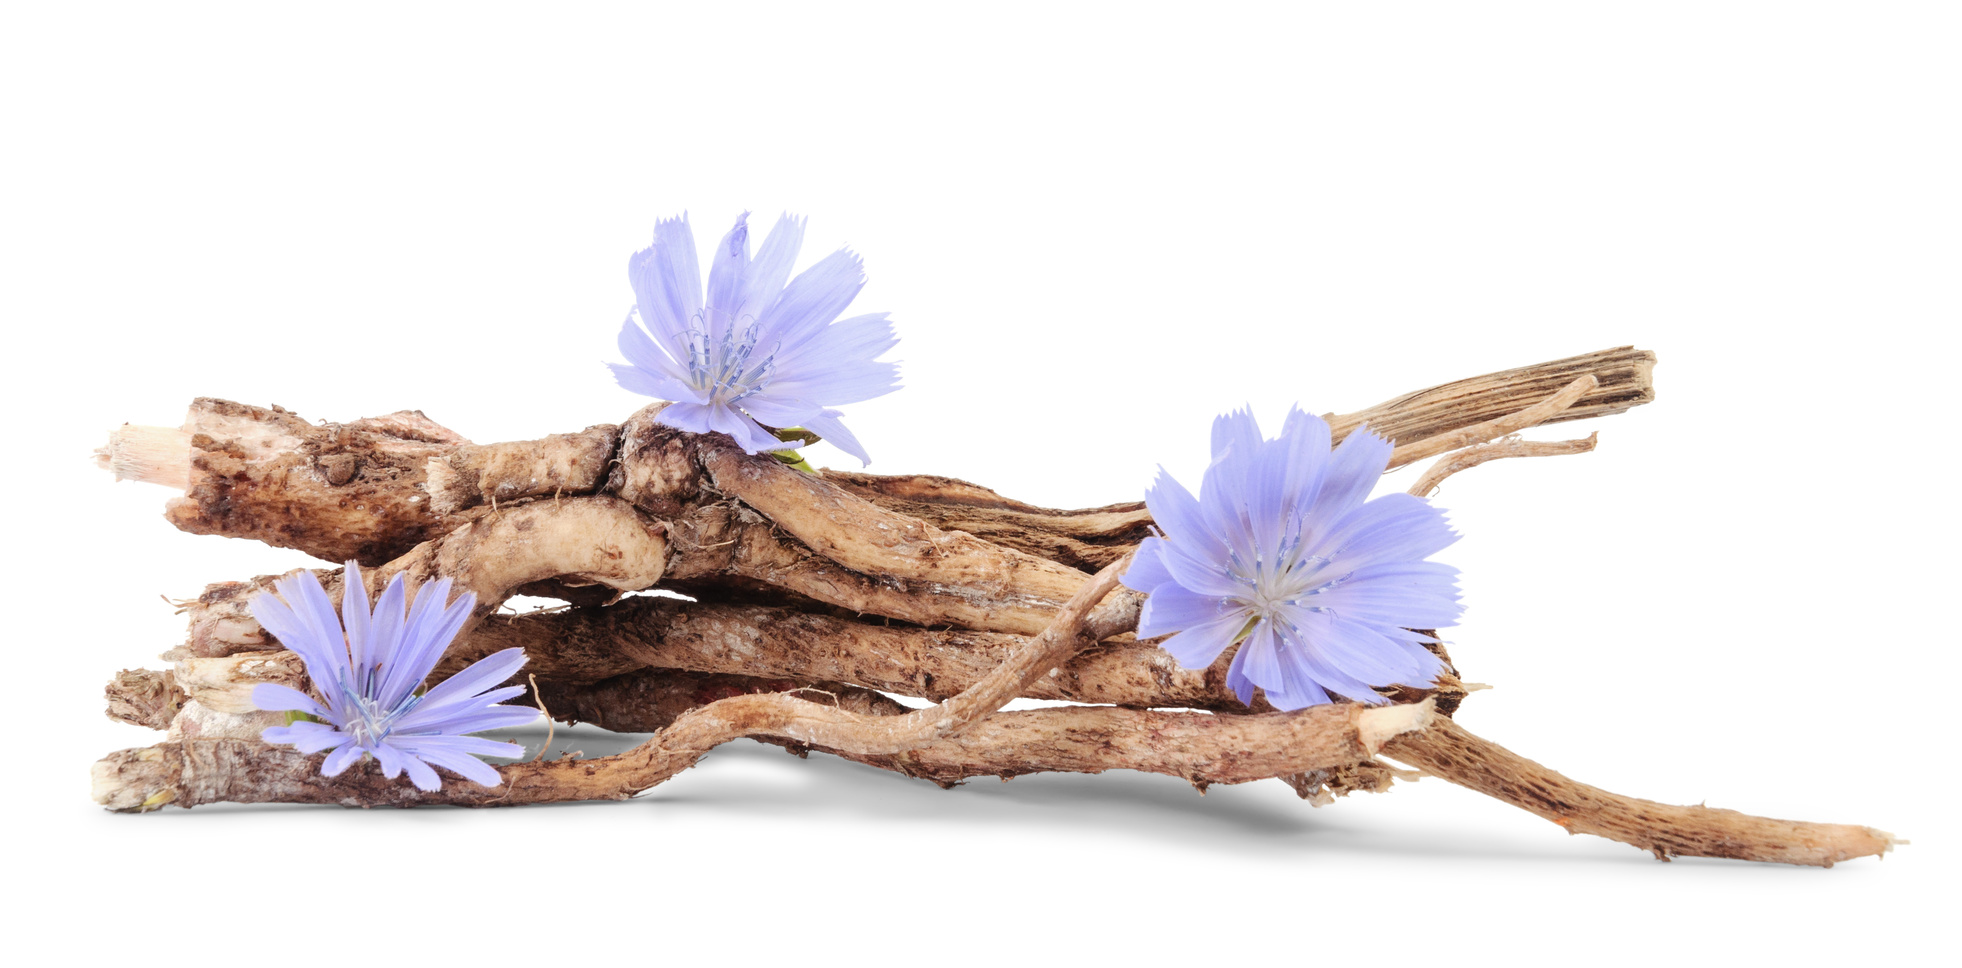 La racine de chicorée est la plante la plus riche en inuline. © Nata Studio, Fotolia